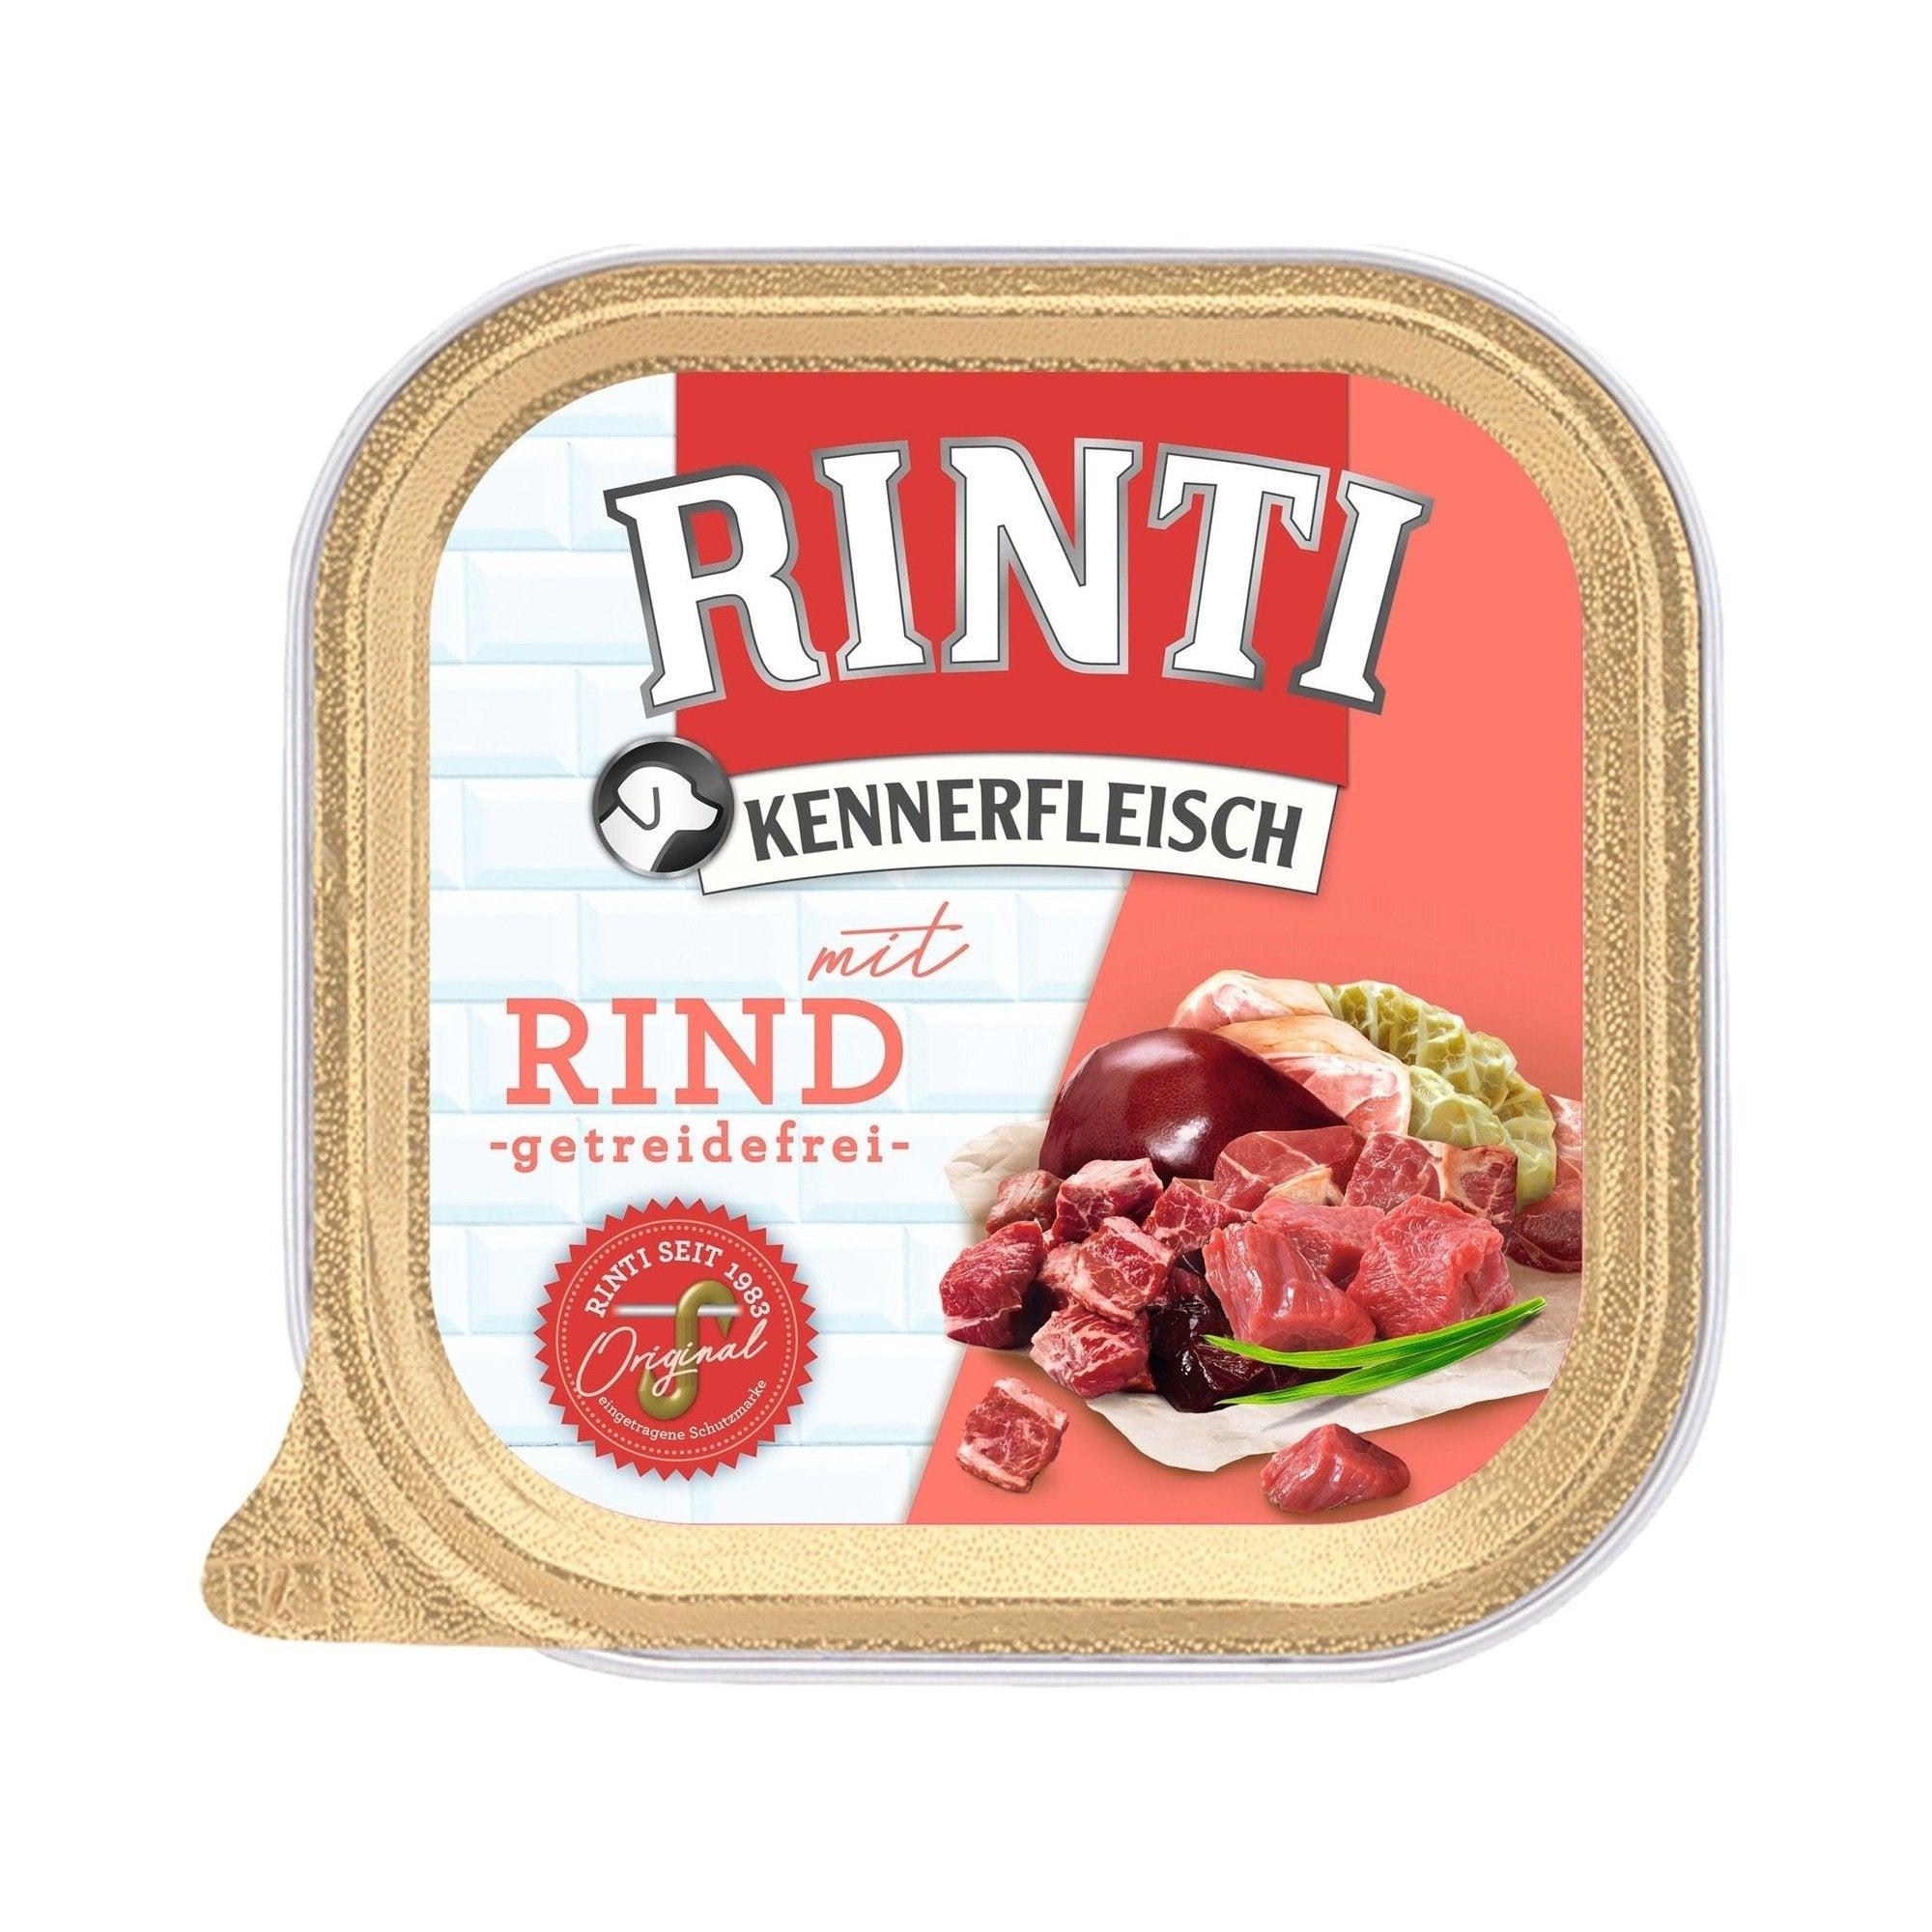 Rinti Kennerfleisch Plus Rind - zoo.de